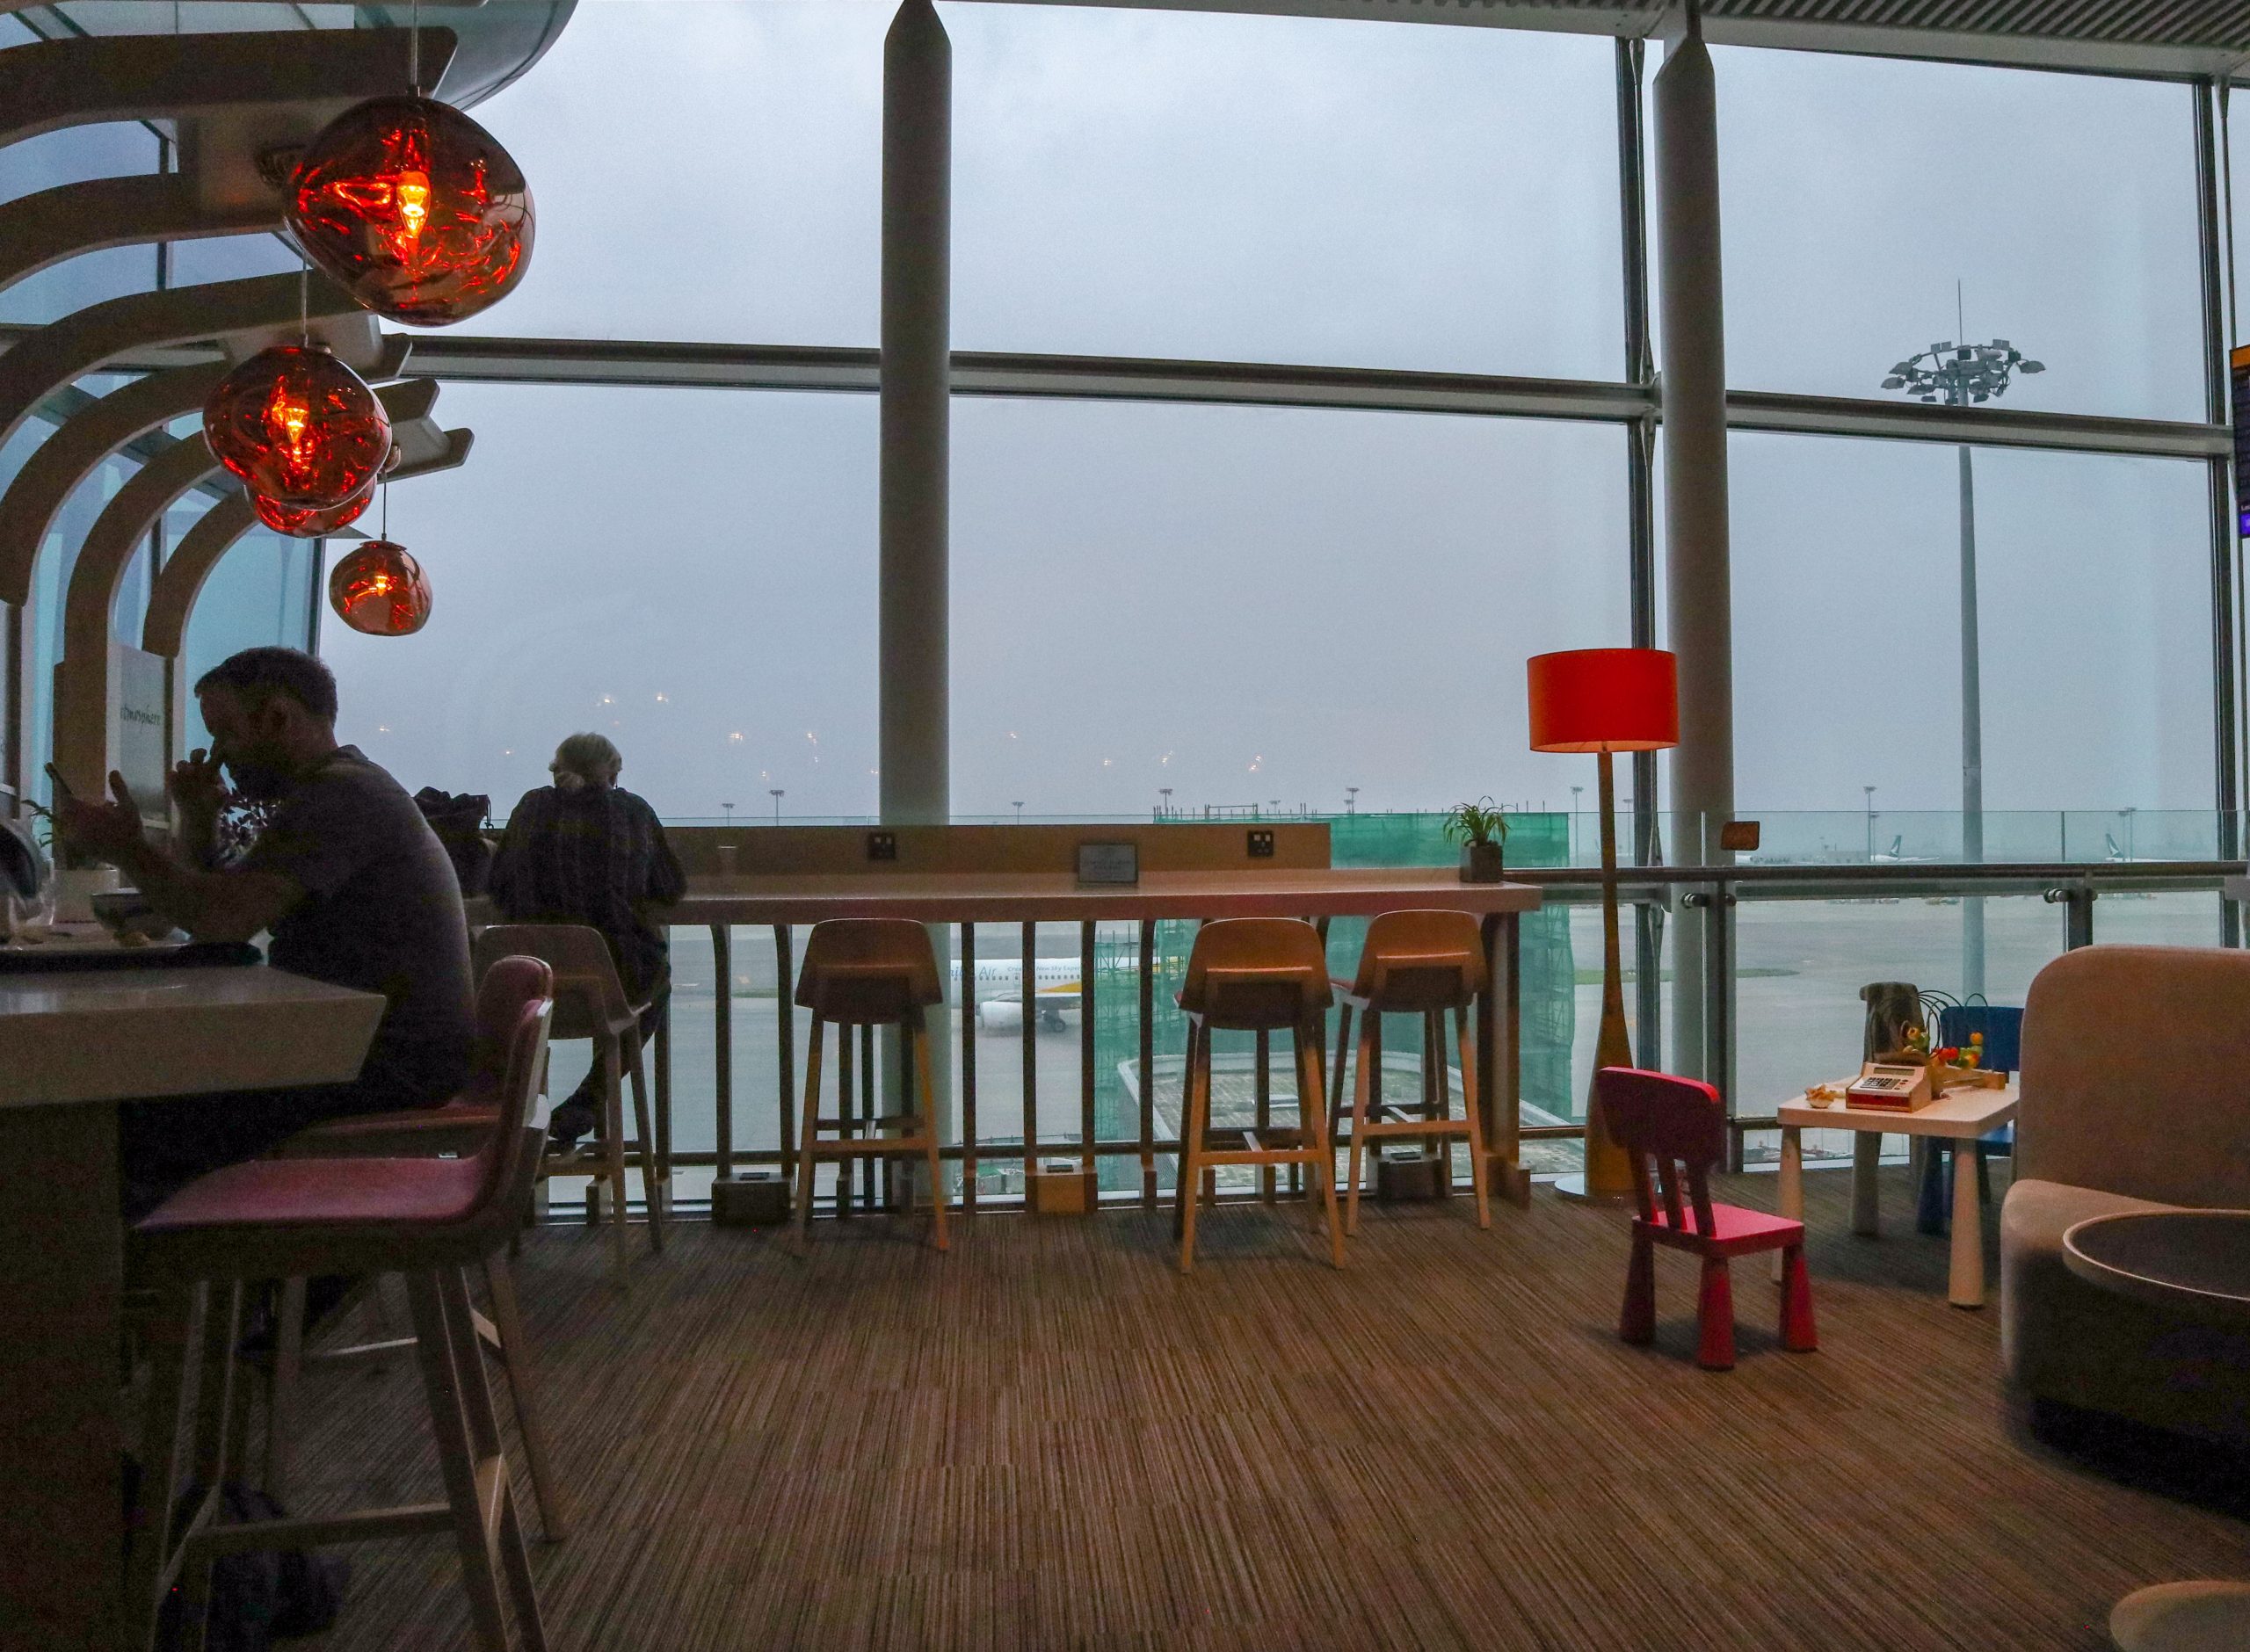 遨堂CLUB AUTUS︱現已重開！香港航空貴賓室體驗圖文報告＋入Lounge方法！提供各種輕食 可以帶埋上機！